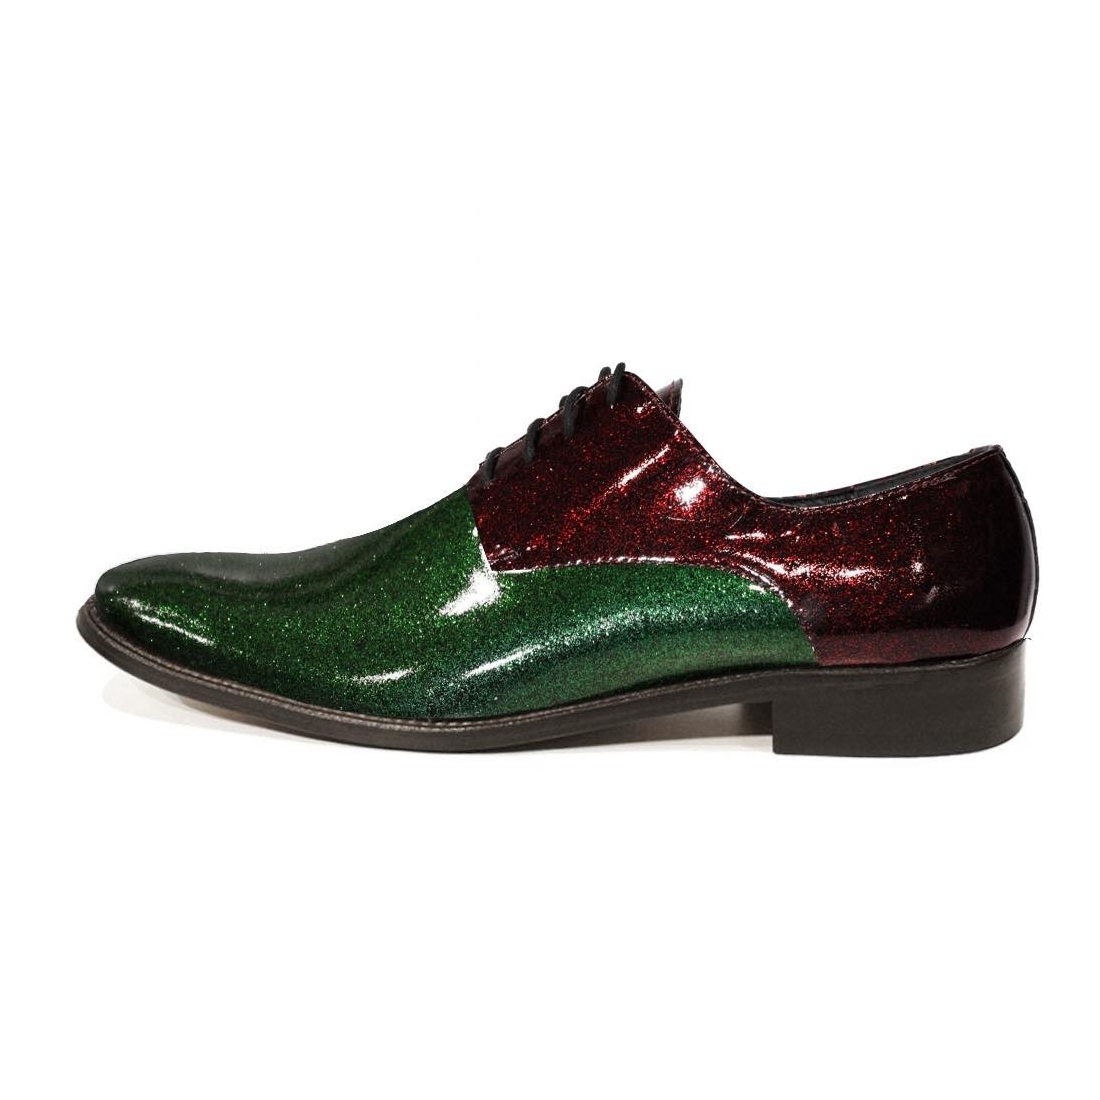 Modello Luccichio - Zapatos Clásicos - Handmade Colorful Italian Leather Shoes